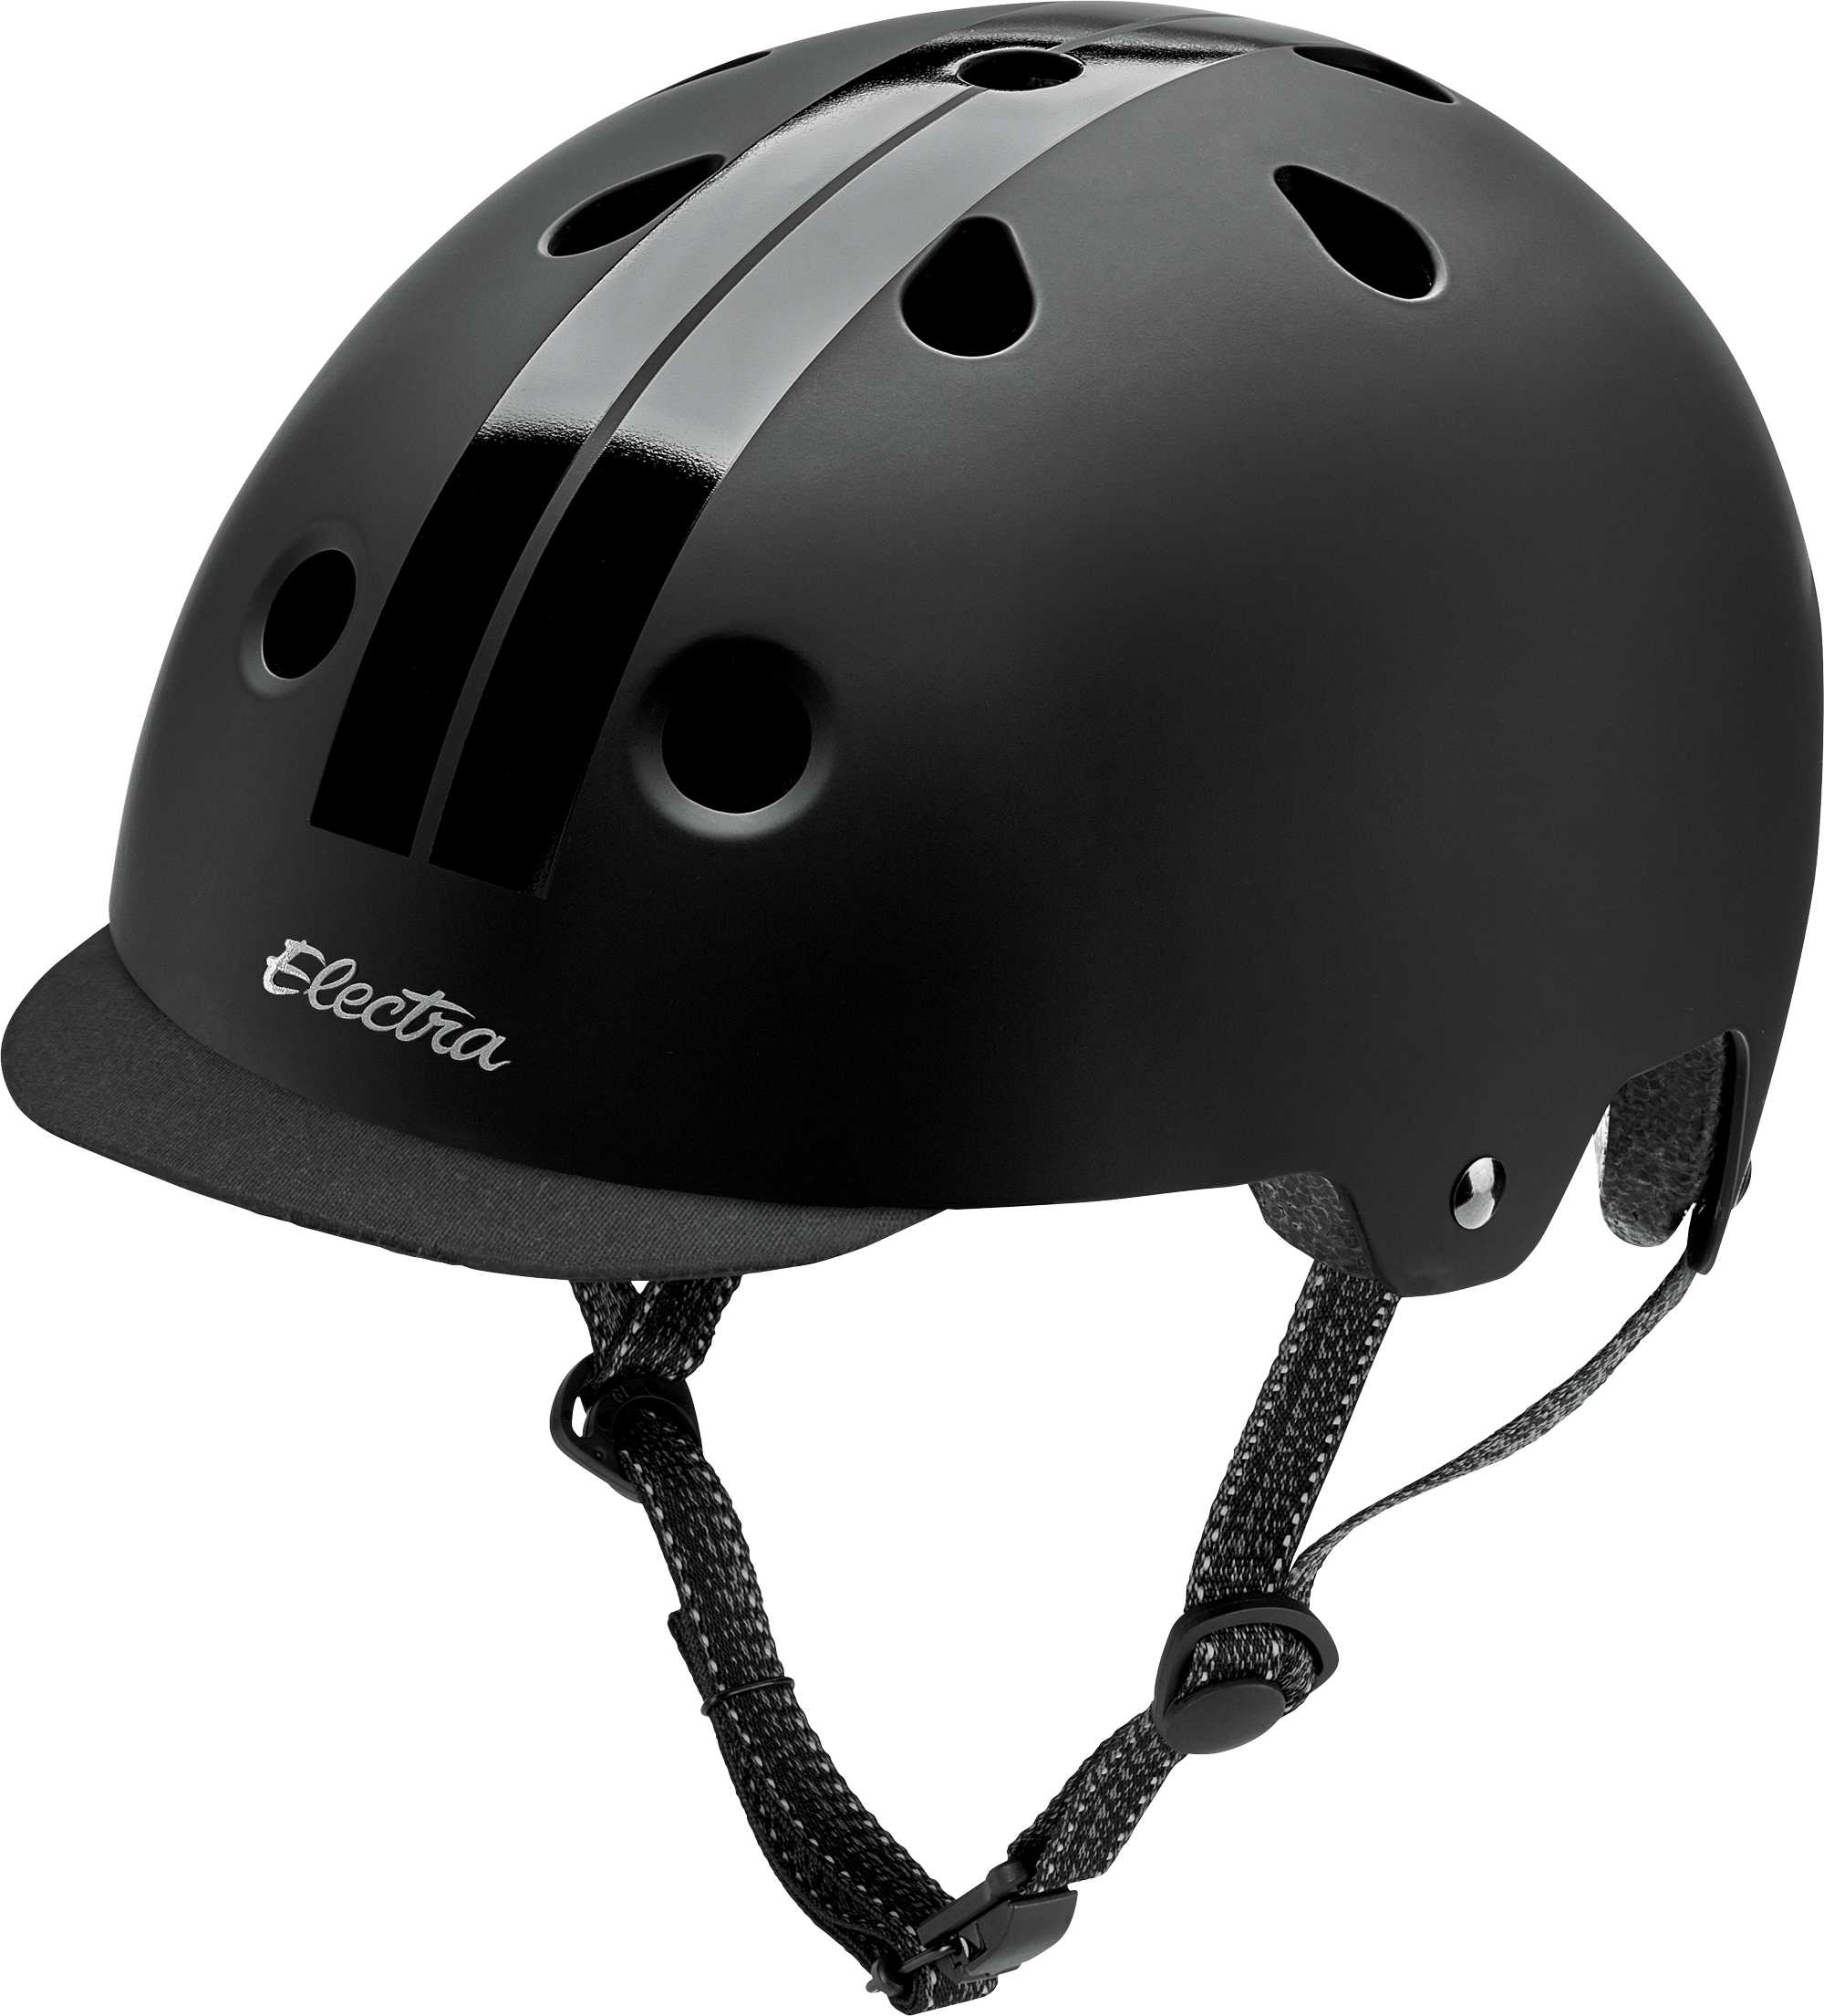 Electra Ace Helmet CE